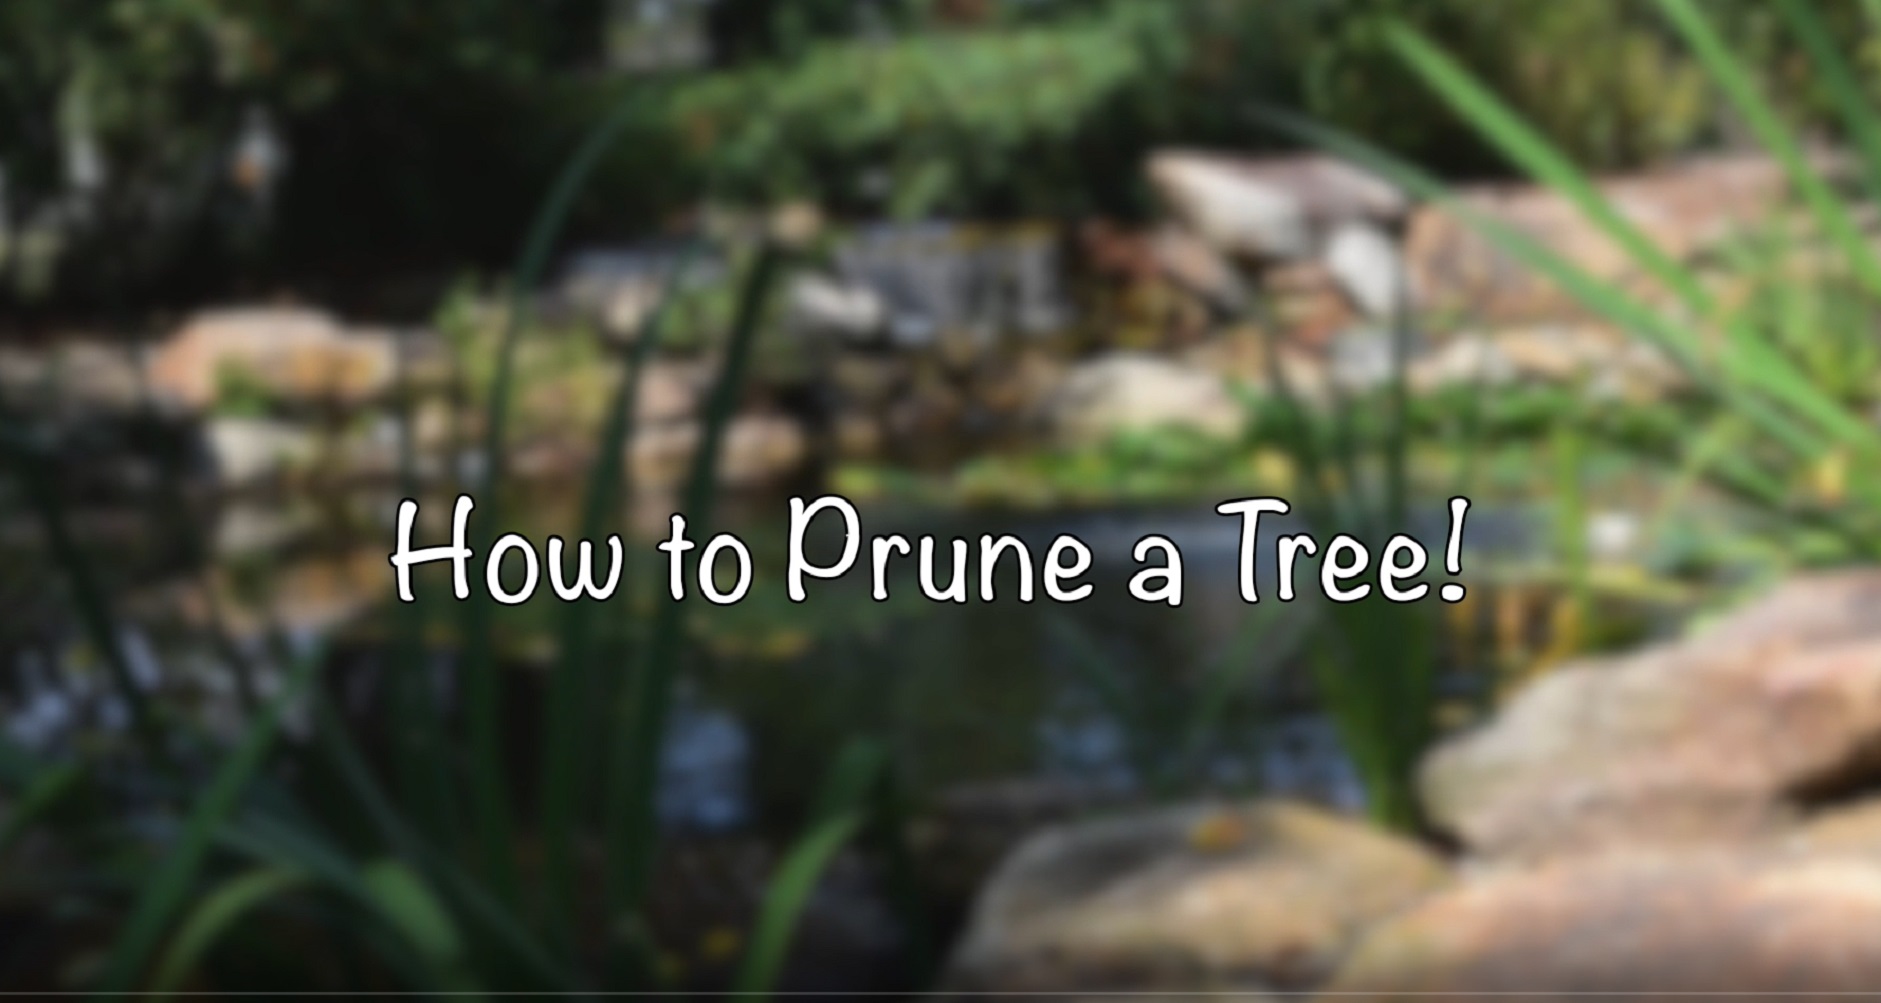 prune a tree